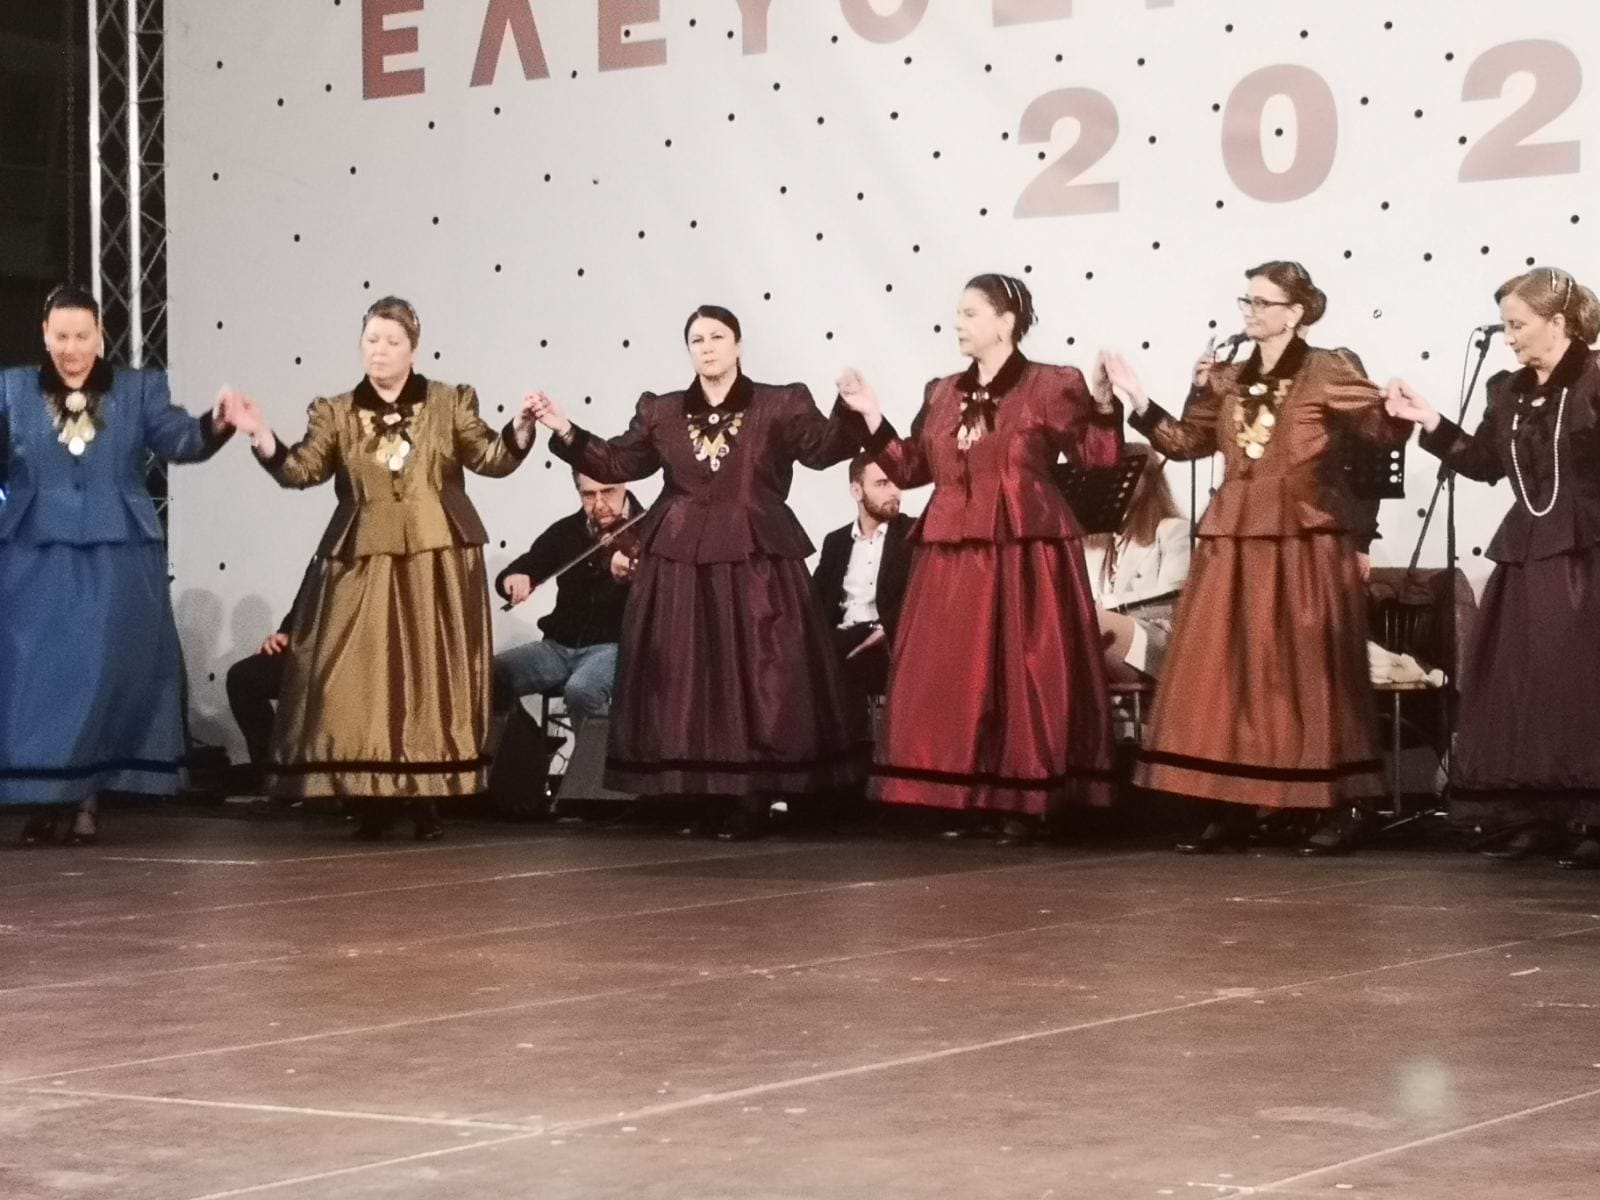 Κομοτηνή: Στα”Ελευθέρια Θράκης 2023″ το χορευτικό τμήμα του Πολιτιστικού Μορφωτικού Συλλόγου  Μεγάλου Κρανοβουνίου, με καινούργιες παραδοσιακές αστικού τύπου ενδυμασίες, που έκλεψαν τις εντυπώσεις (φωτος)